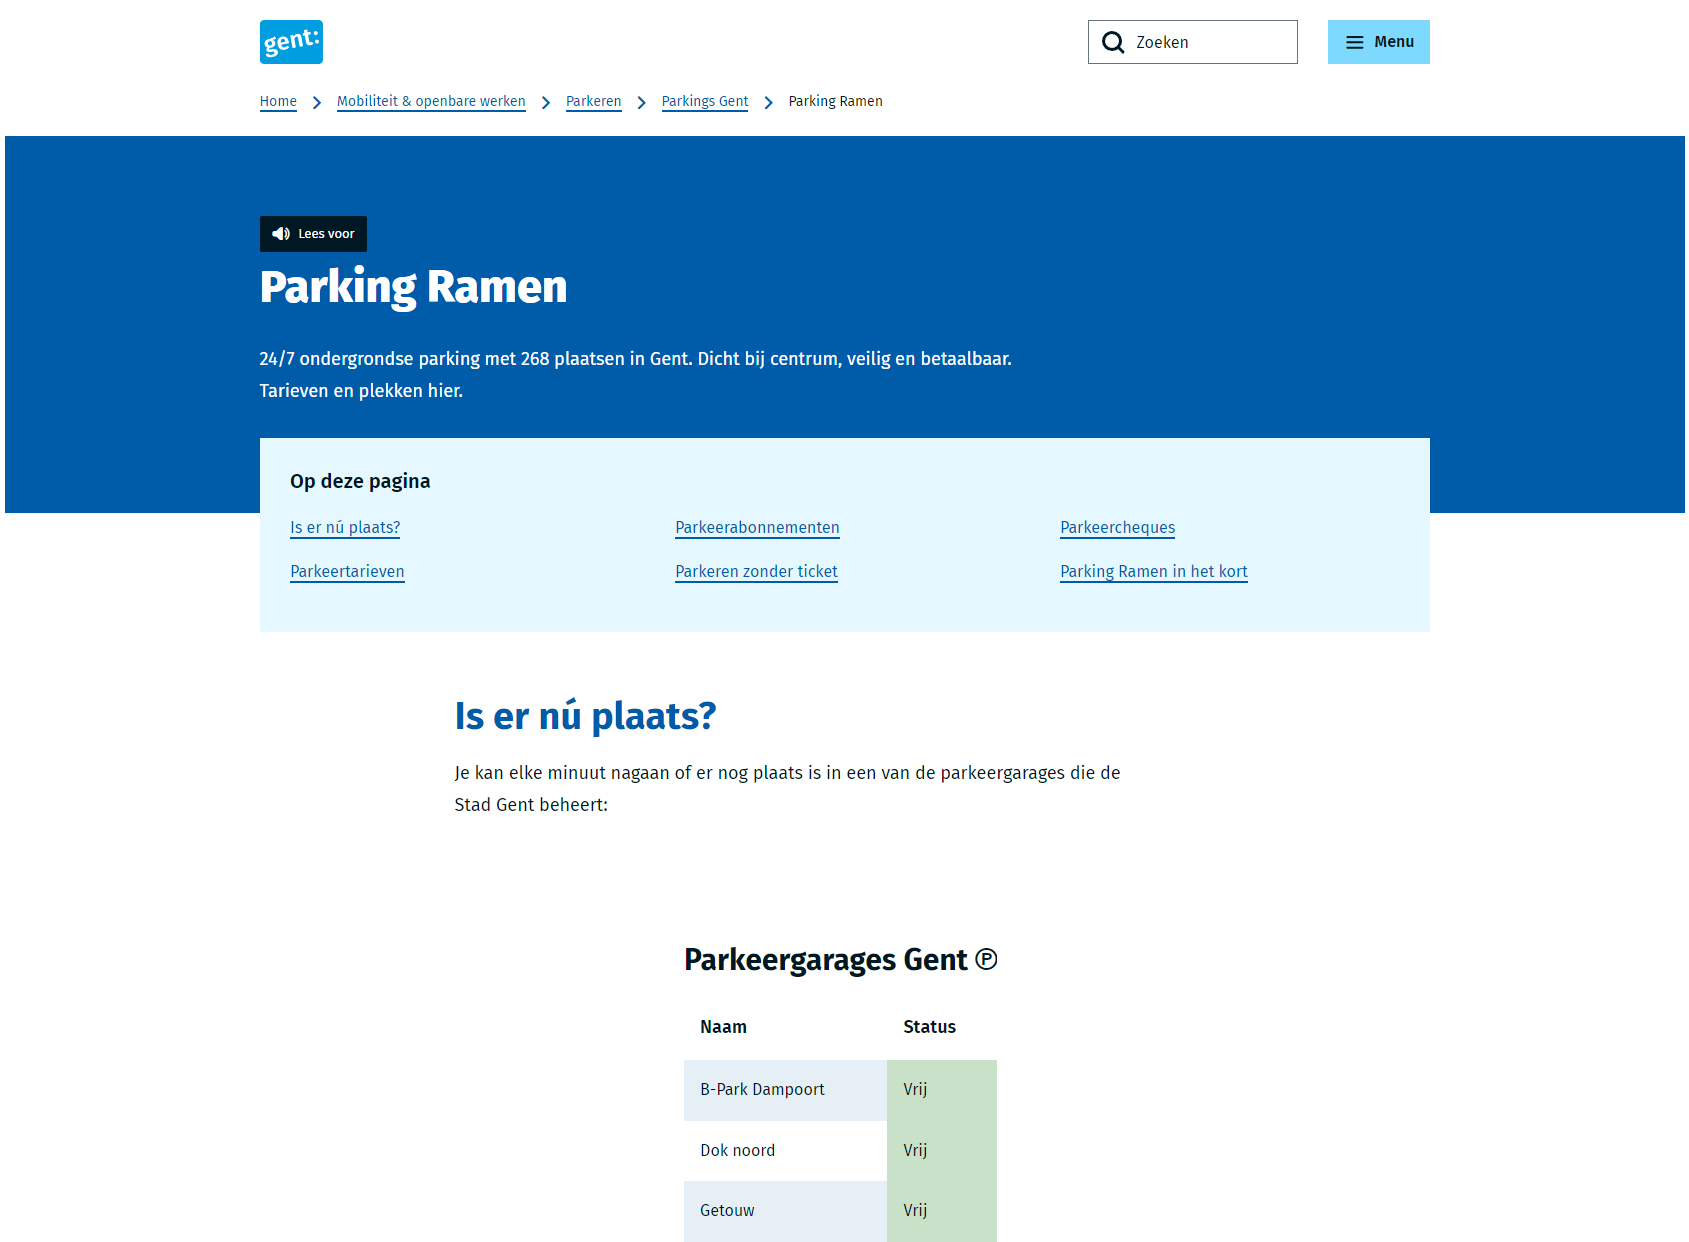 Parking Ramen (P8)